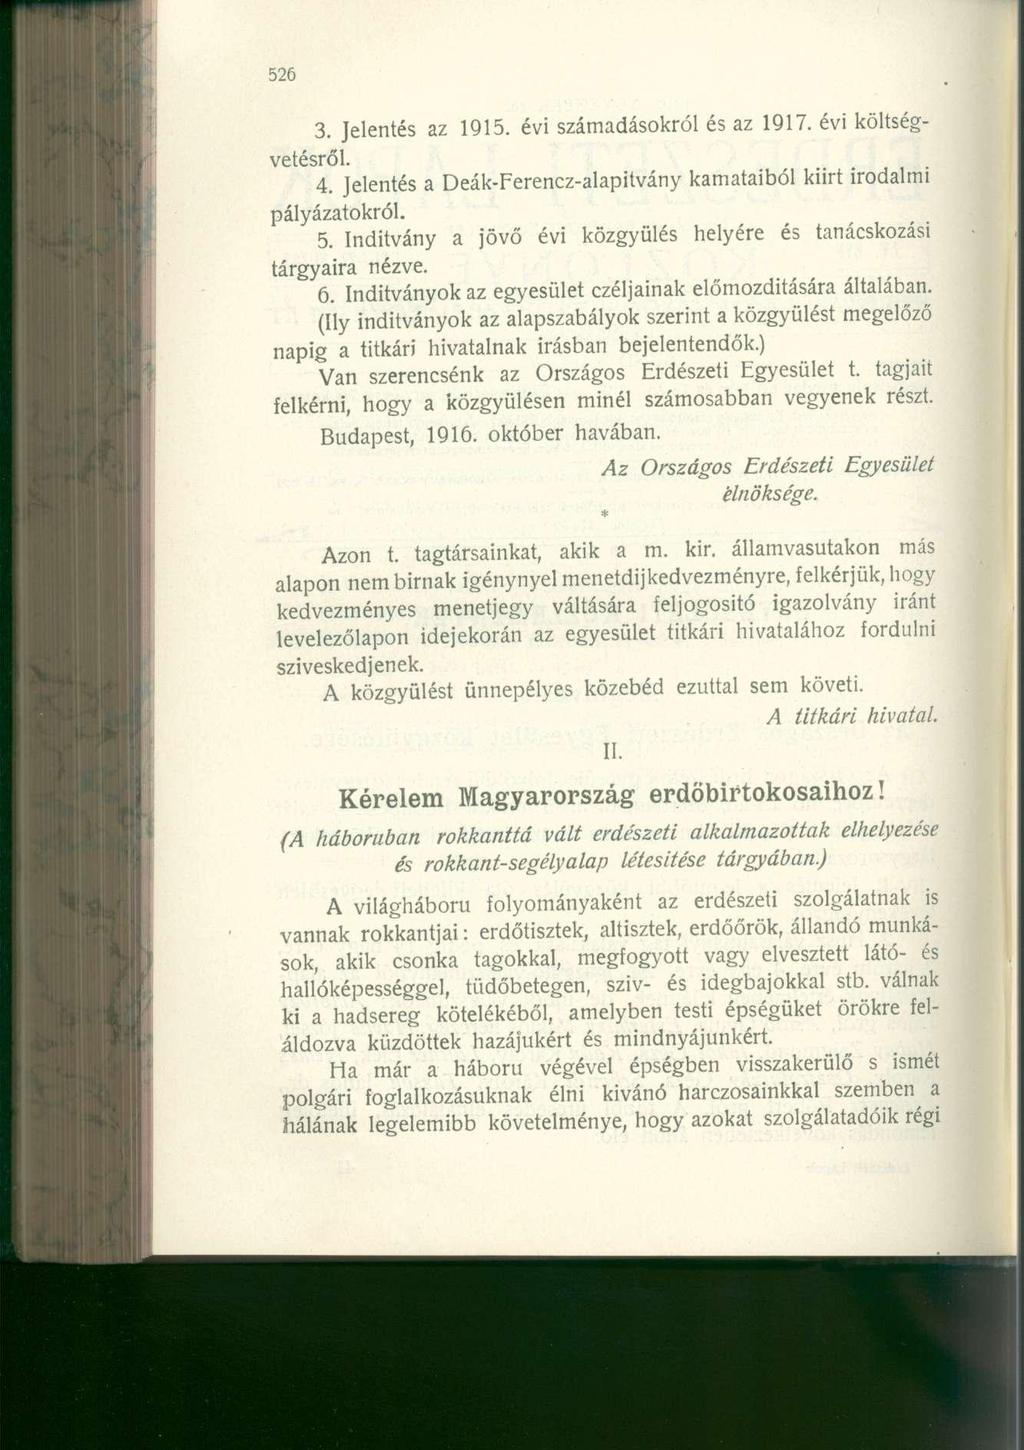 3. Jelentés az 1915. évi számadásokról és az 1917. évi költségvetésről. 4. Jelentés a Deák-Ferencz-alapitvány kamataiból kiirt irodalmi pályázatokról. 5.